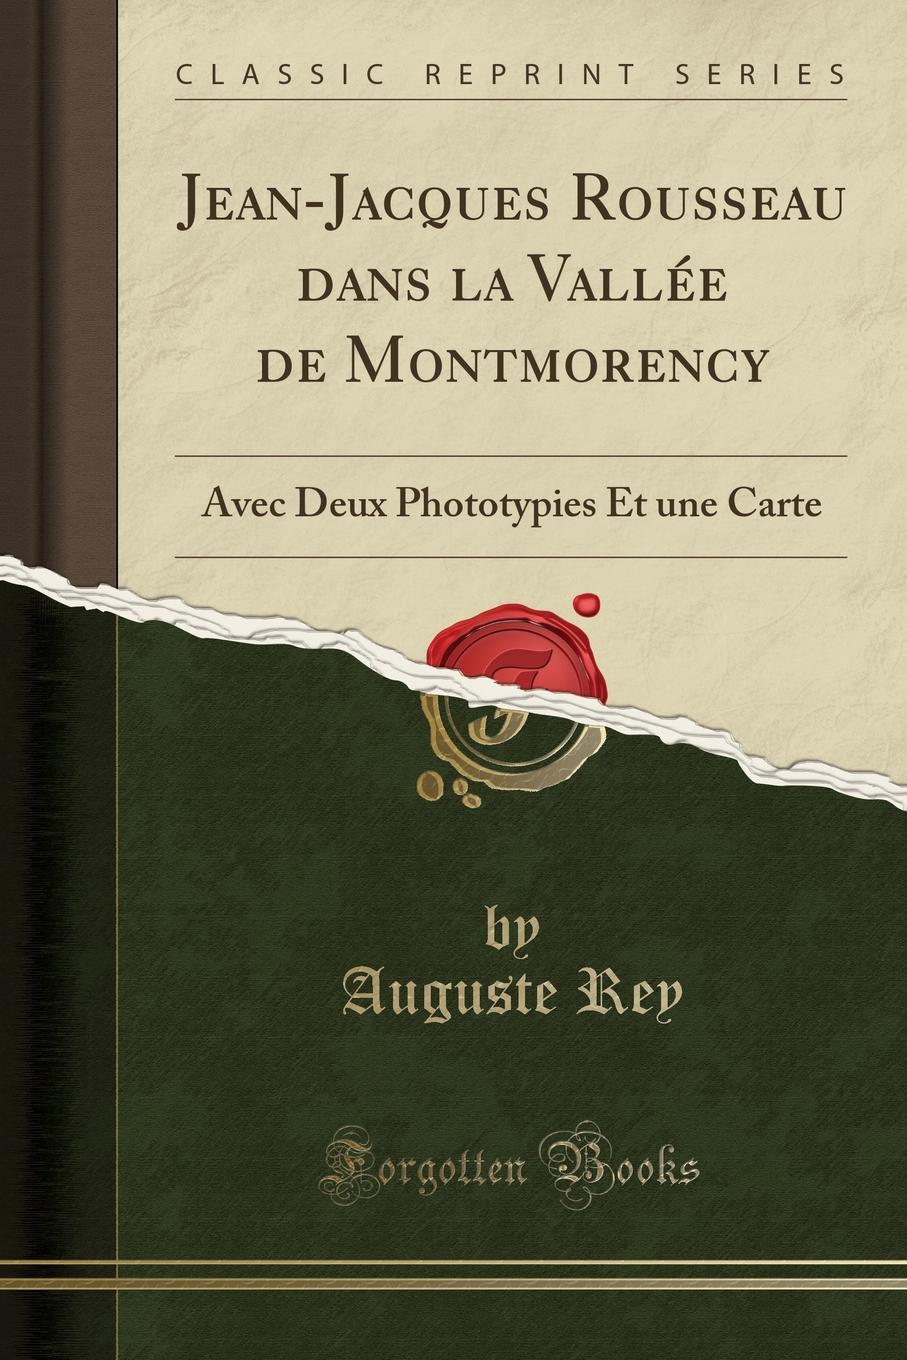 Jean-Jacques Rousseau dans la Vallee de Montmorency. Avec Deux Phototypies Et une Carte (Classic Reprint)